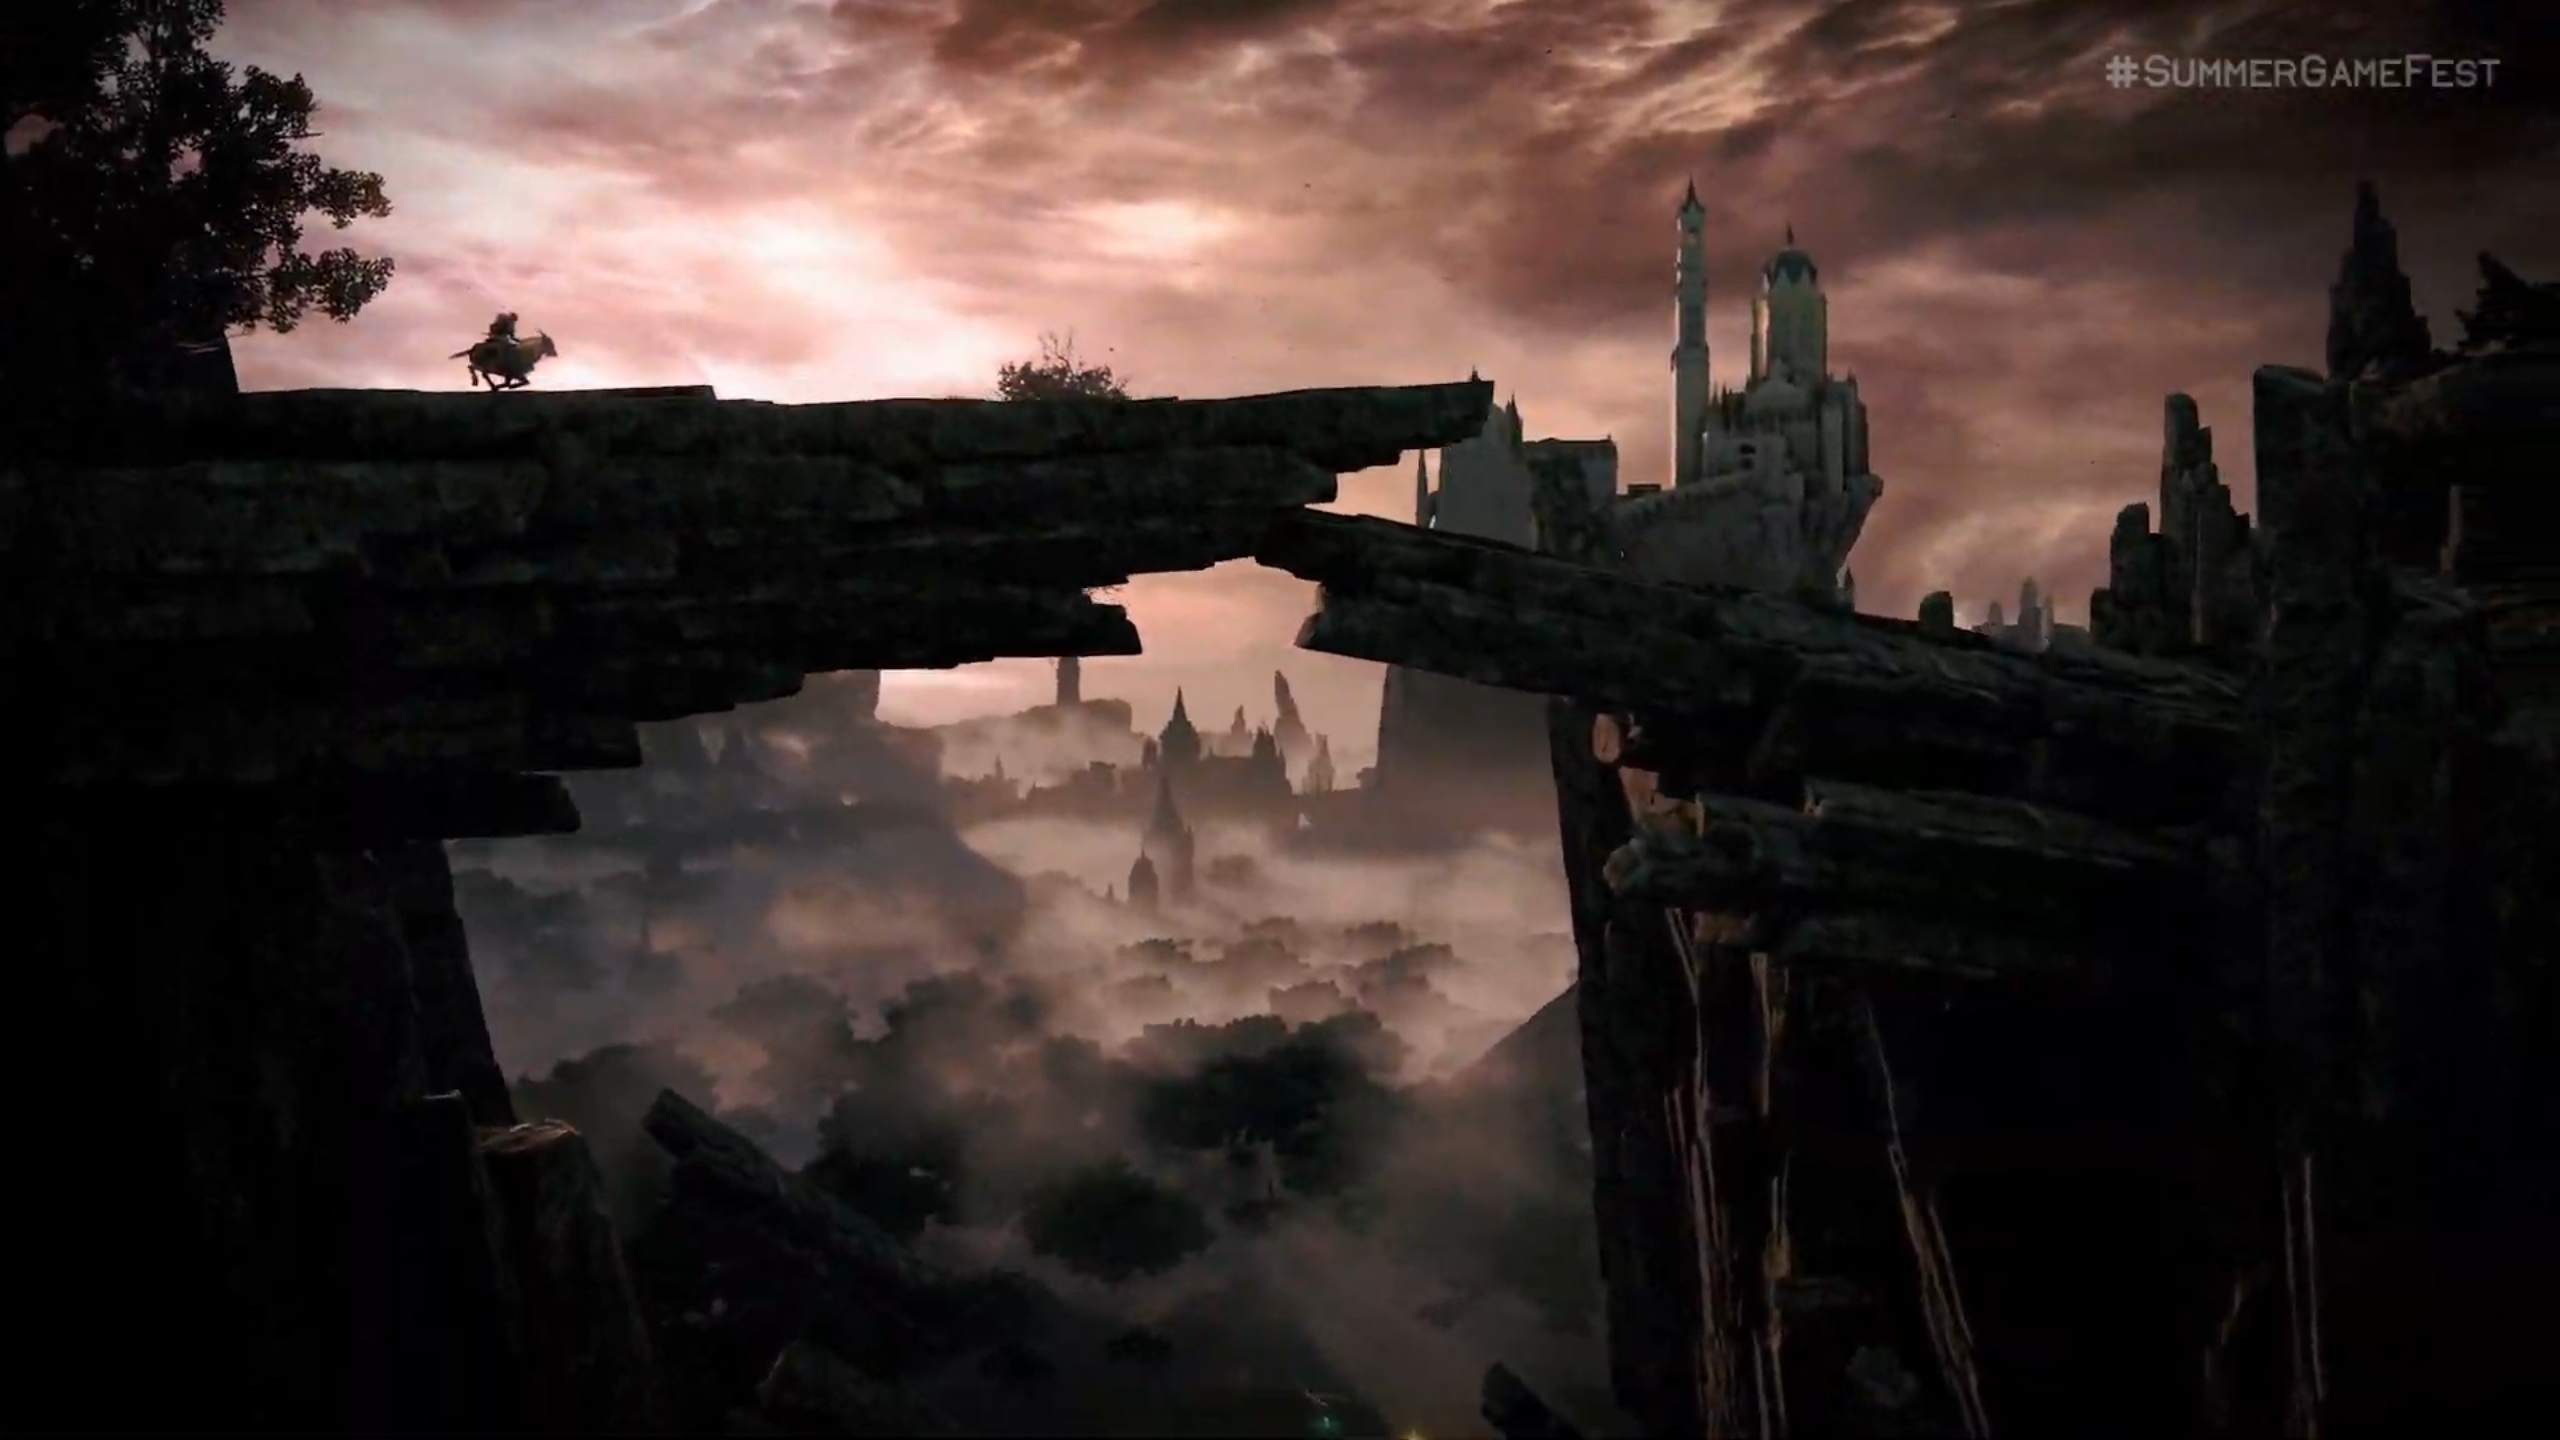 E3 Trailer: 'Elden Ring